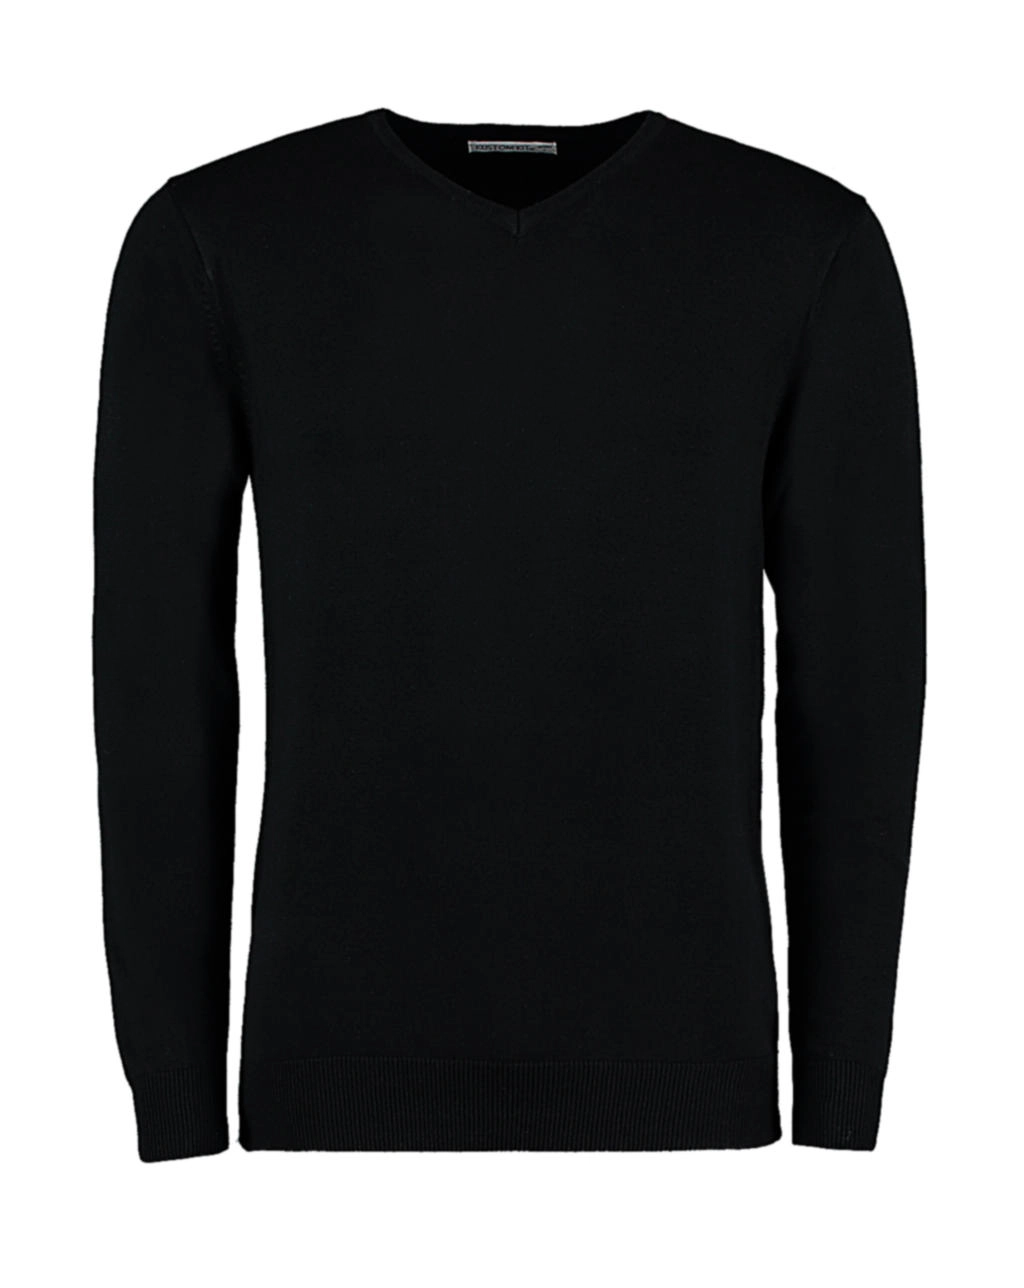 Classic Fit Arundel V Neck Sweater zum Besticken und Bedrucken in der Farbe Black mit Ihren Logo, Schriftzug oder Motiv.